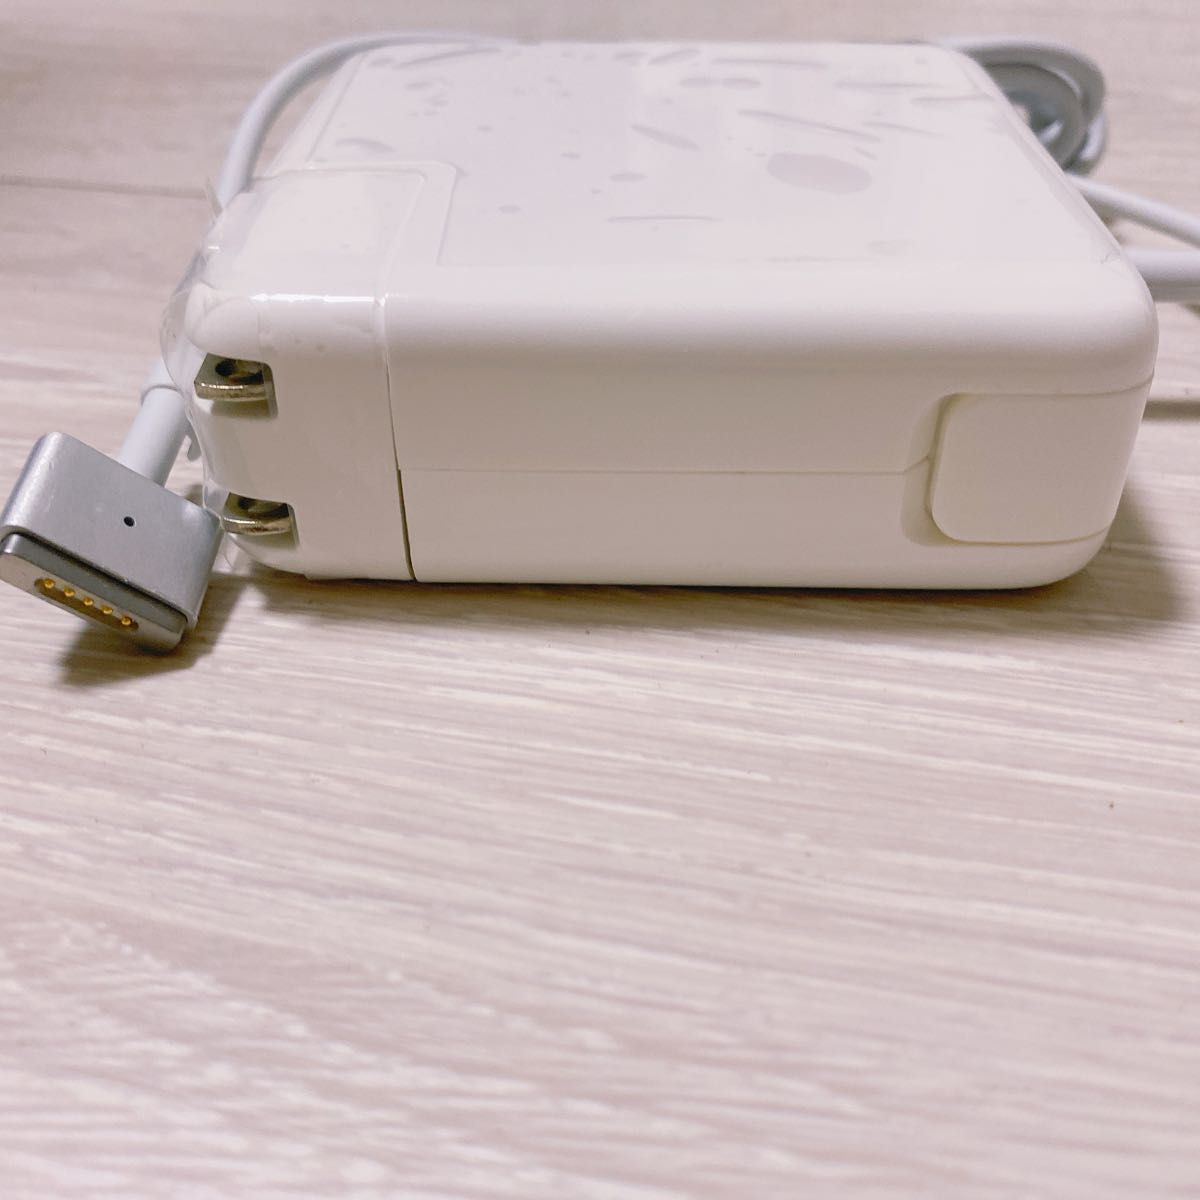 新品 Macbook Pro 電源互換アダプタ 85W MagSafe 2 T Mac